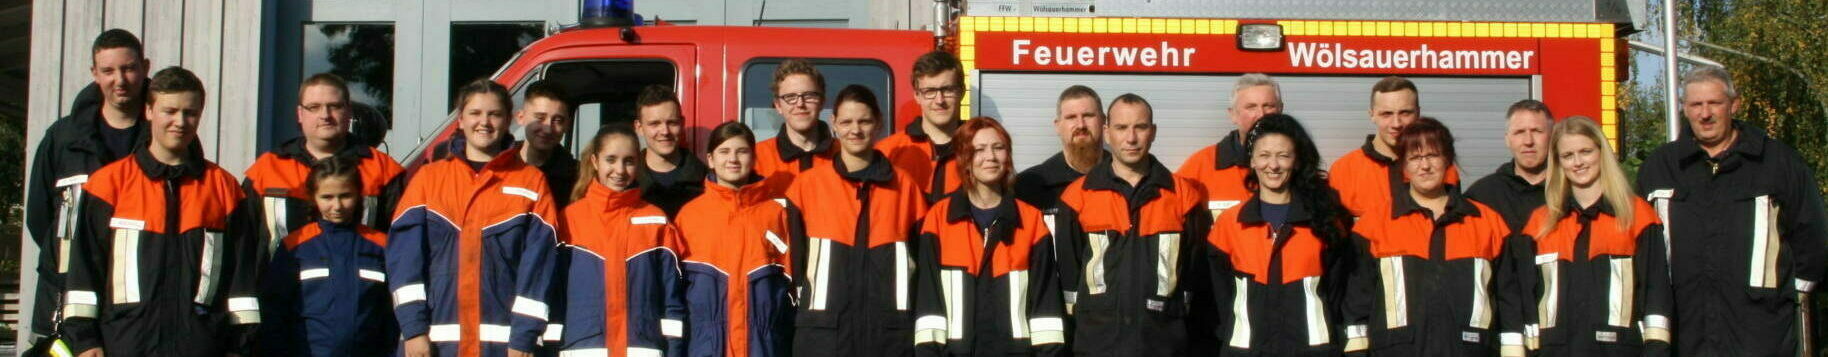 Freiwillige Feuerwehr Wölsauerhammer